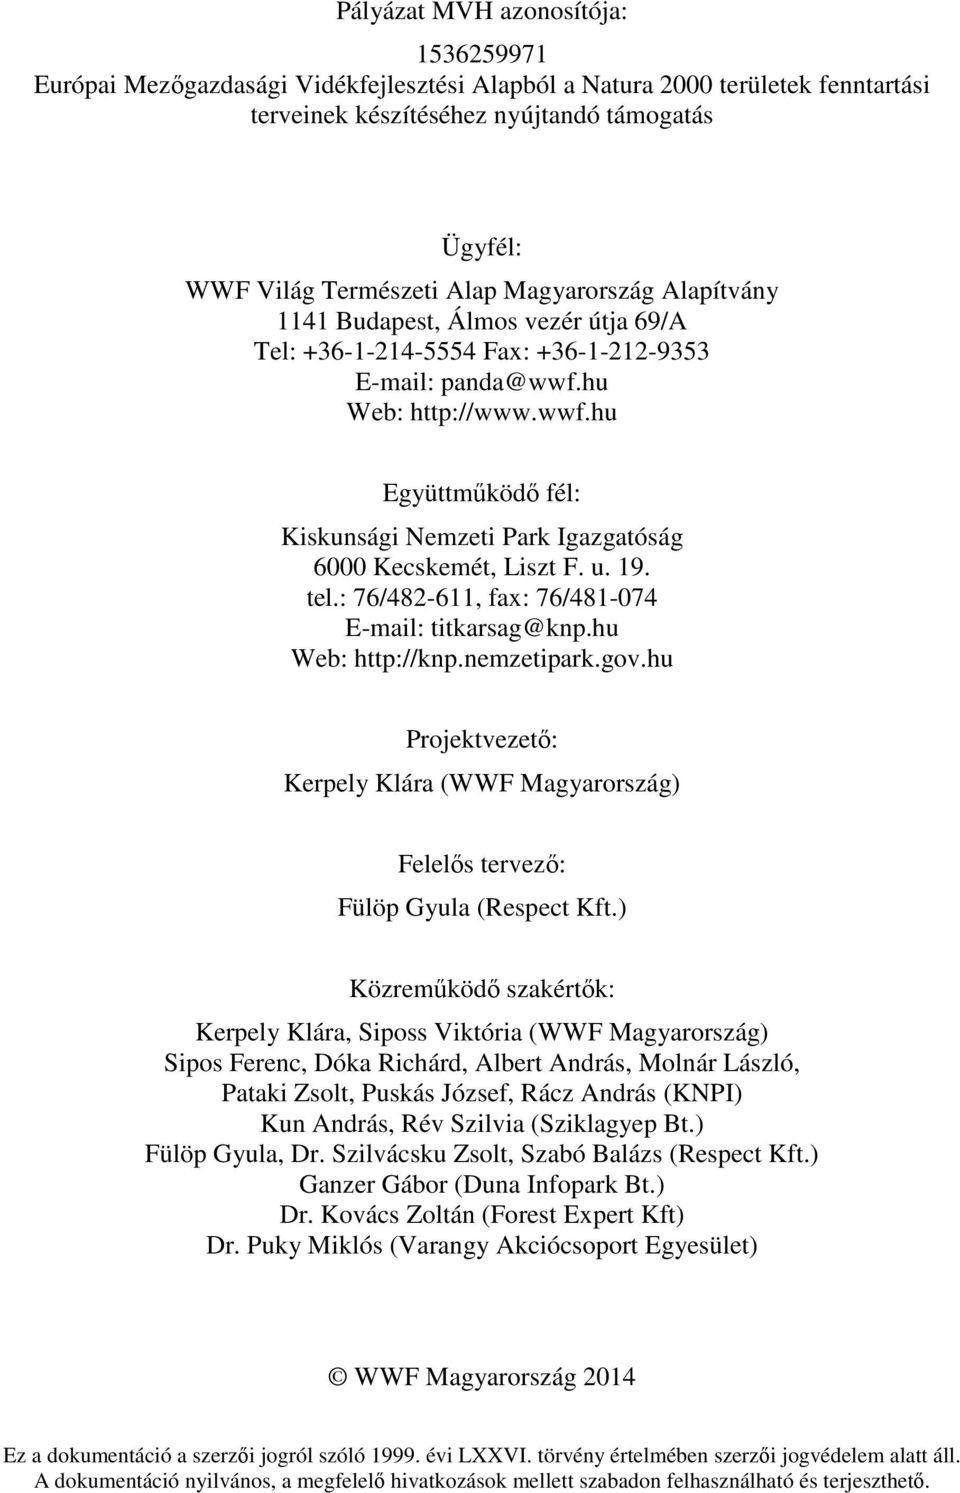 u. 19. tel.: 76/482-611, fax: 76/481-074 E-mail: titkarsag@knp.hu Web: http://knp.nemzetipark.gov.hu Projektvezető: Kerpely Klára (WWF Magyarország) Felelős tervező: Fülöp Gyula (Respect Kft.